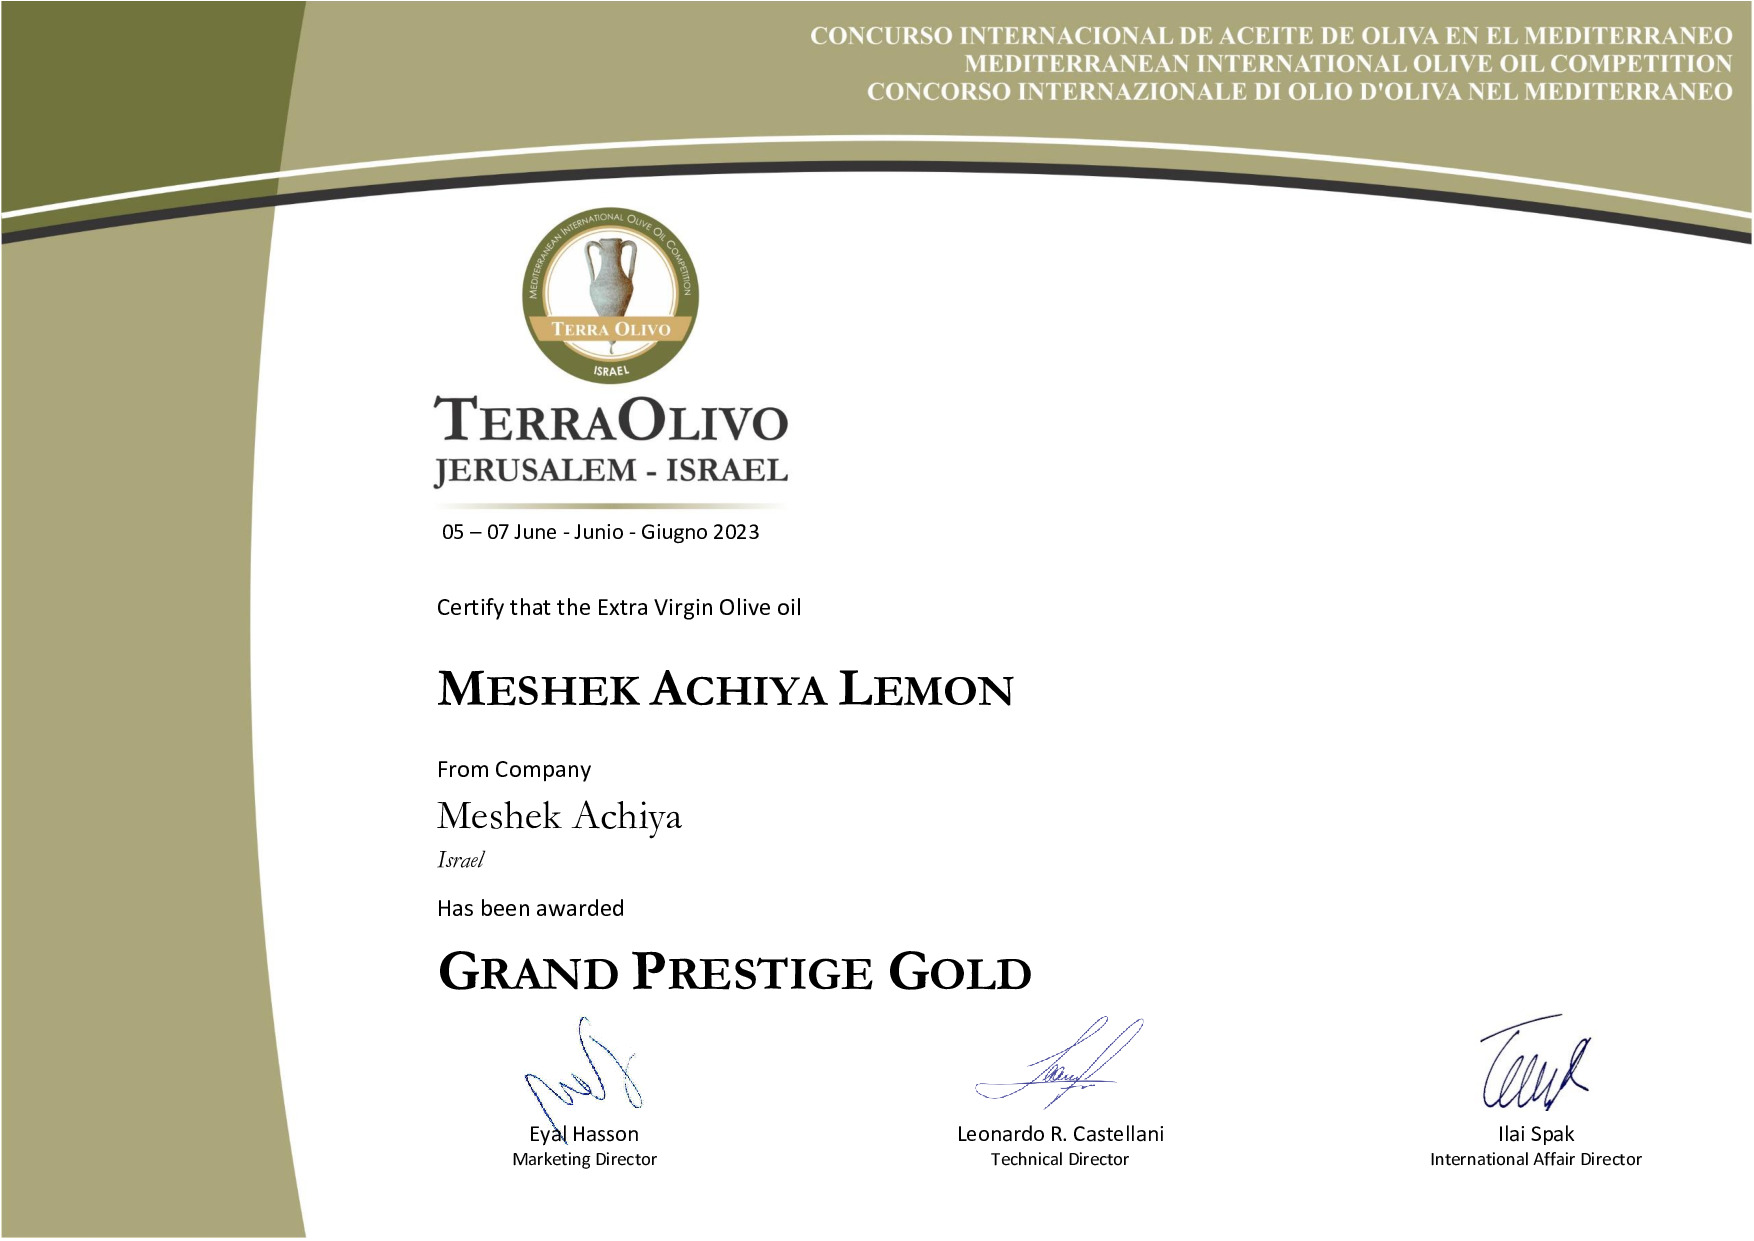 Meshek_Achiya_Lemon_Grand_Prestige_Gold